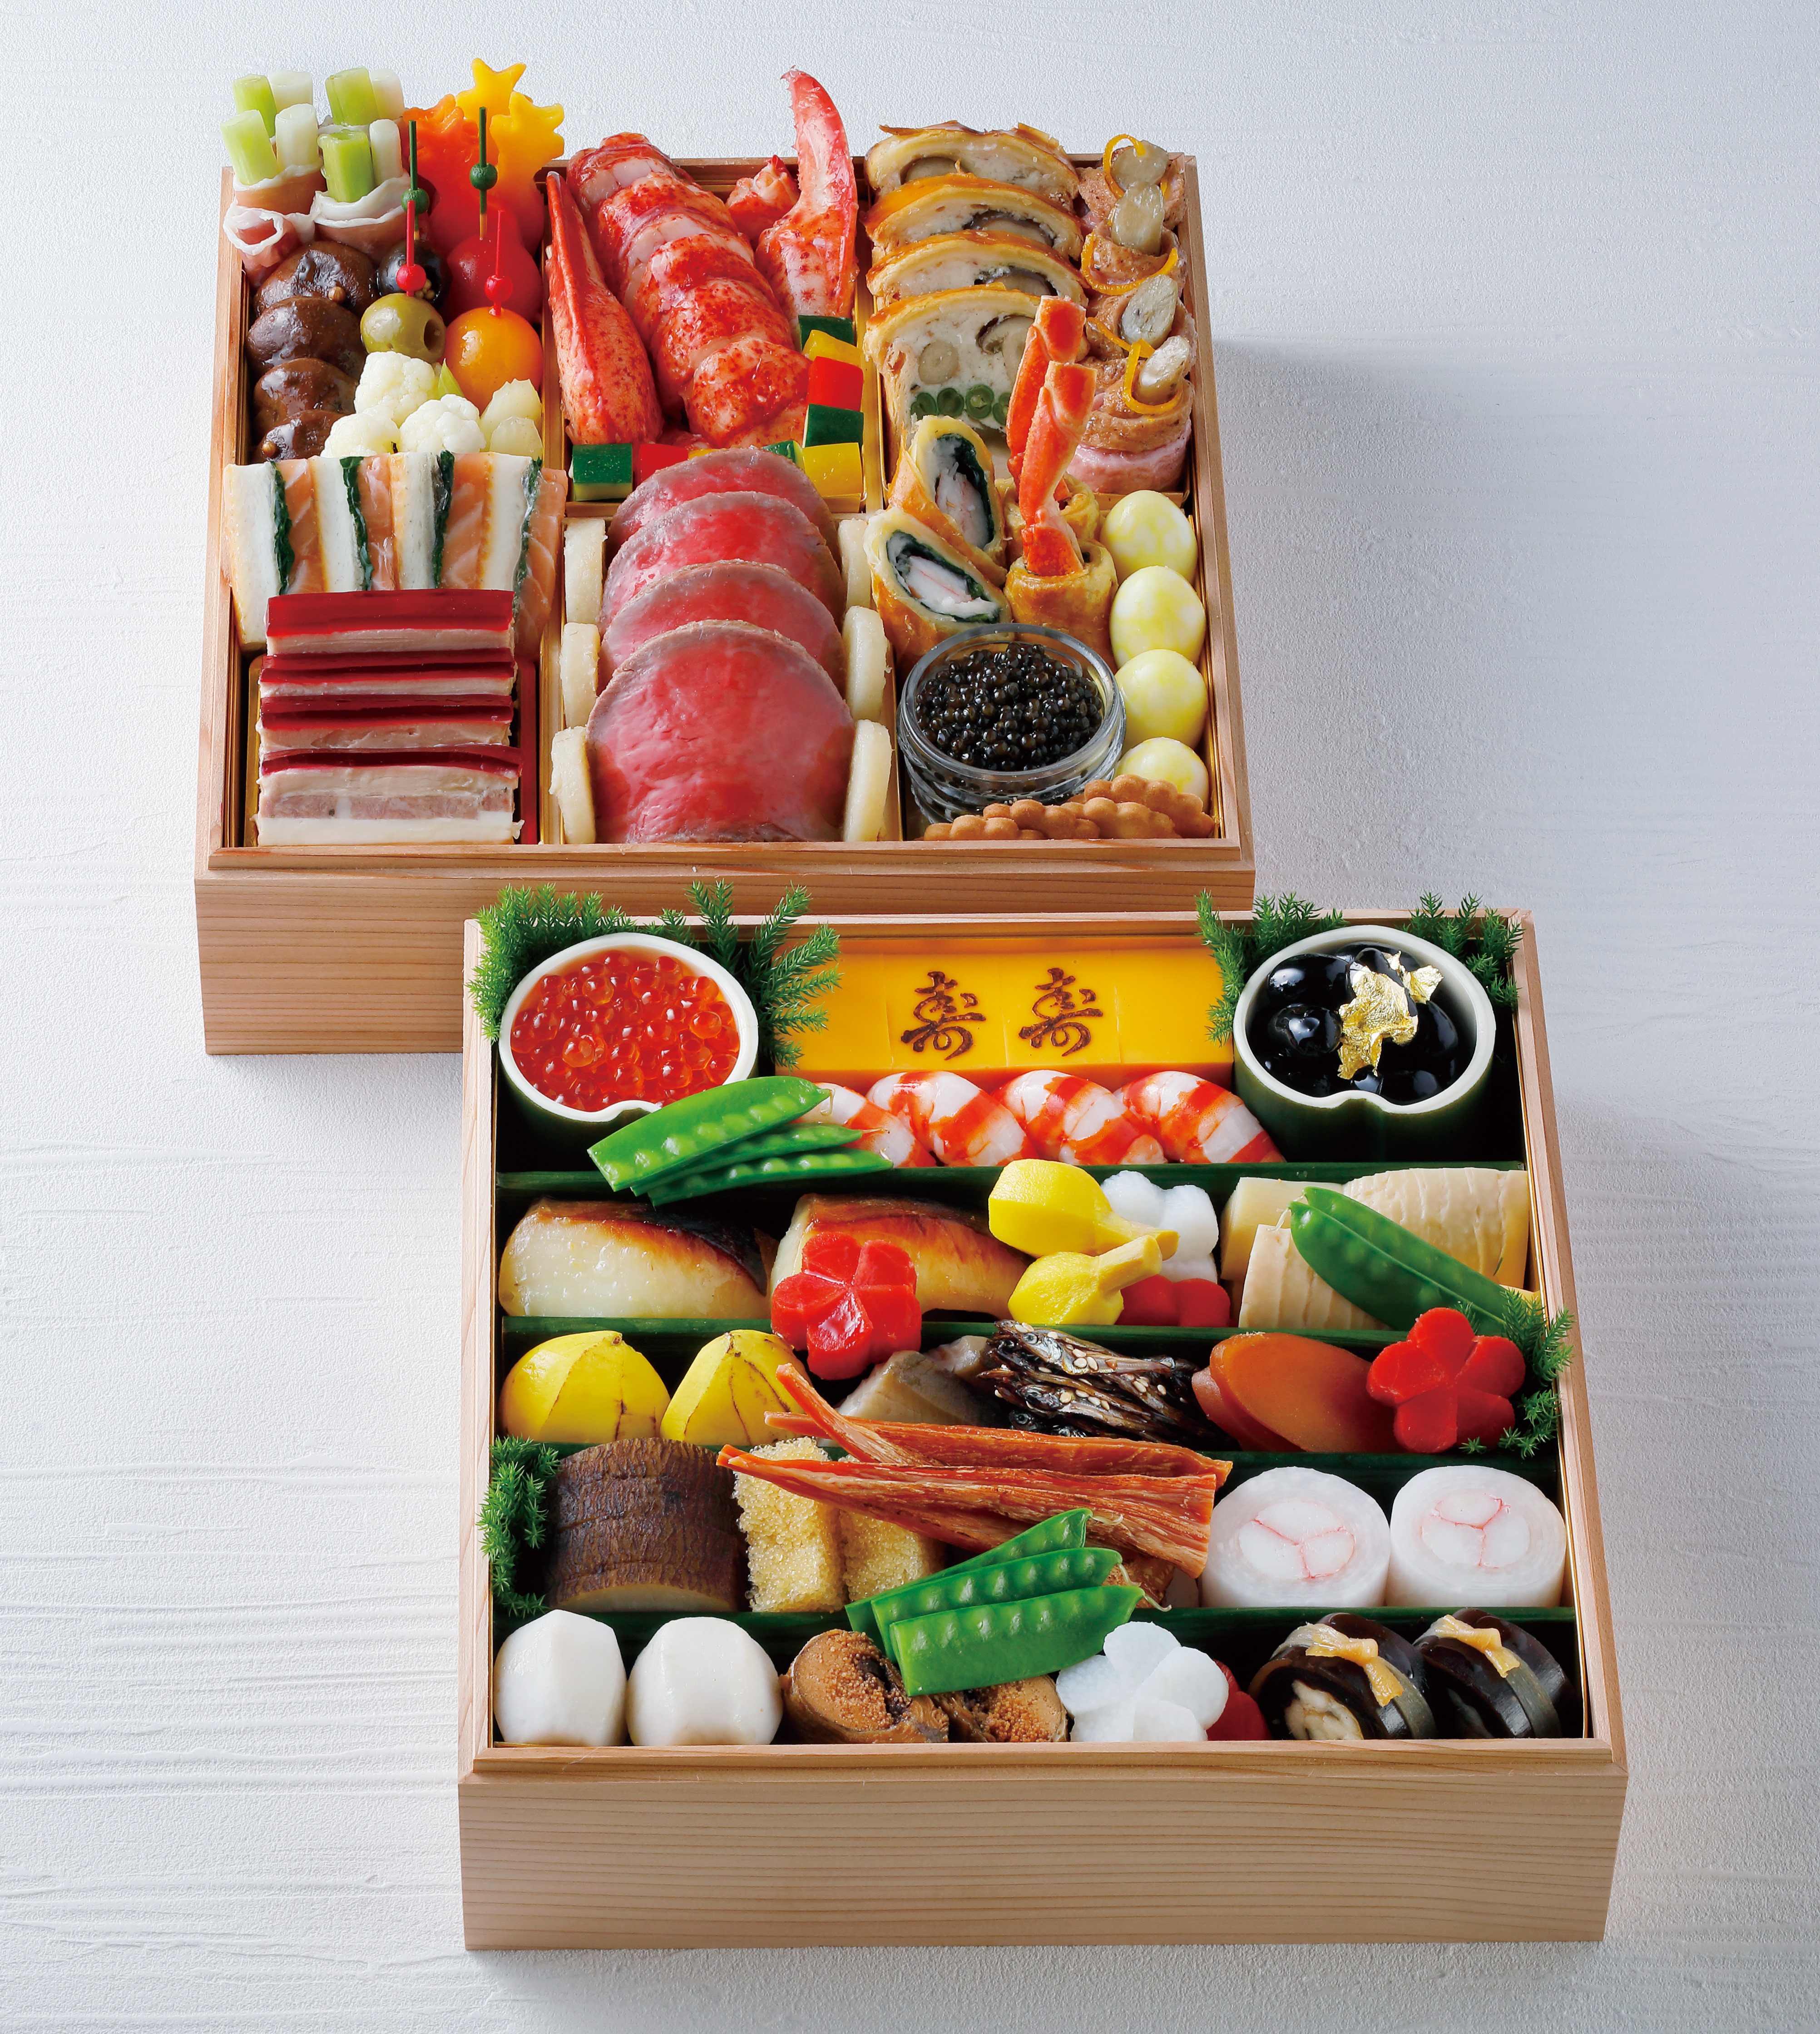 京都ホテルオークラ 京都ホテルオークラの22年おせち料理 オークラ ホテルズ リゾーツのプレスリリース